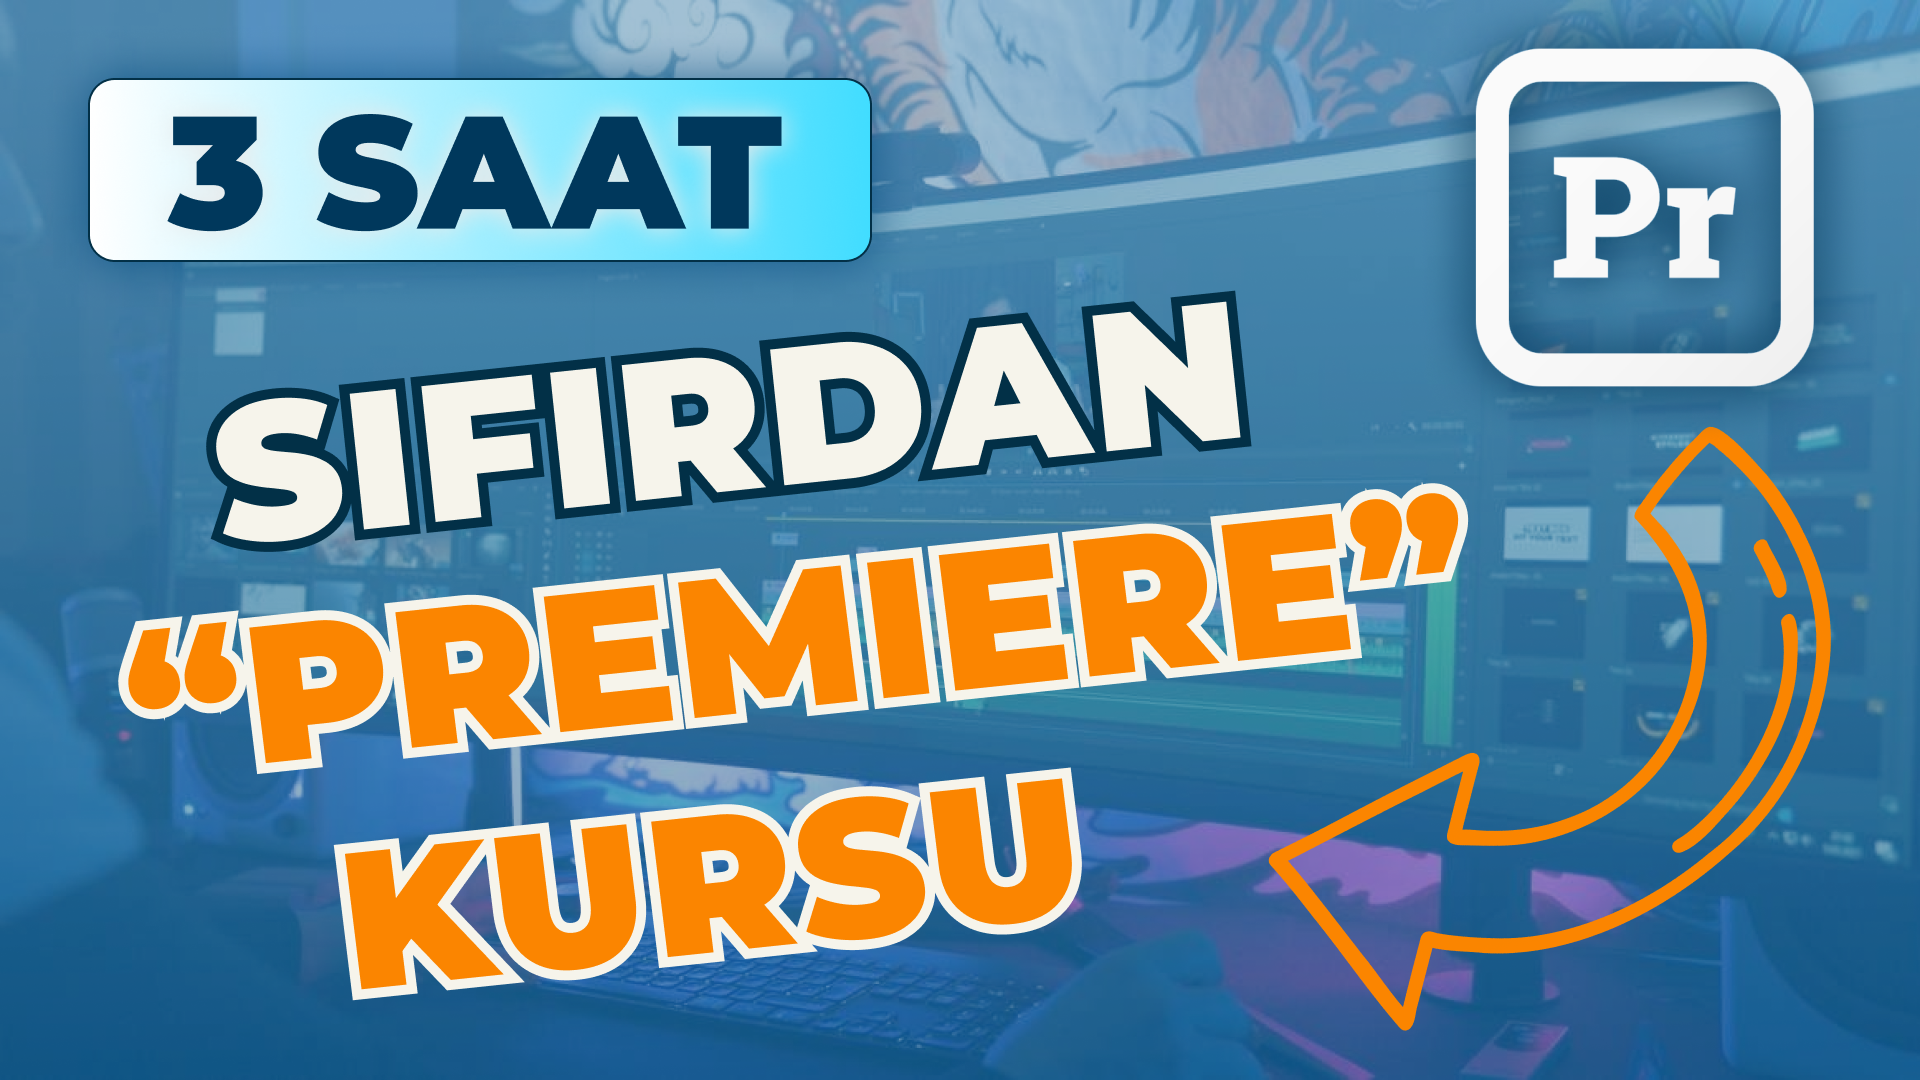 Sıfırdan Adobe Premiere Pro kursu - Azərbaycan dilində. 3 saat!